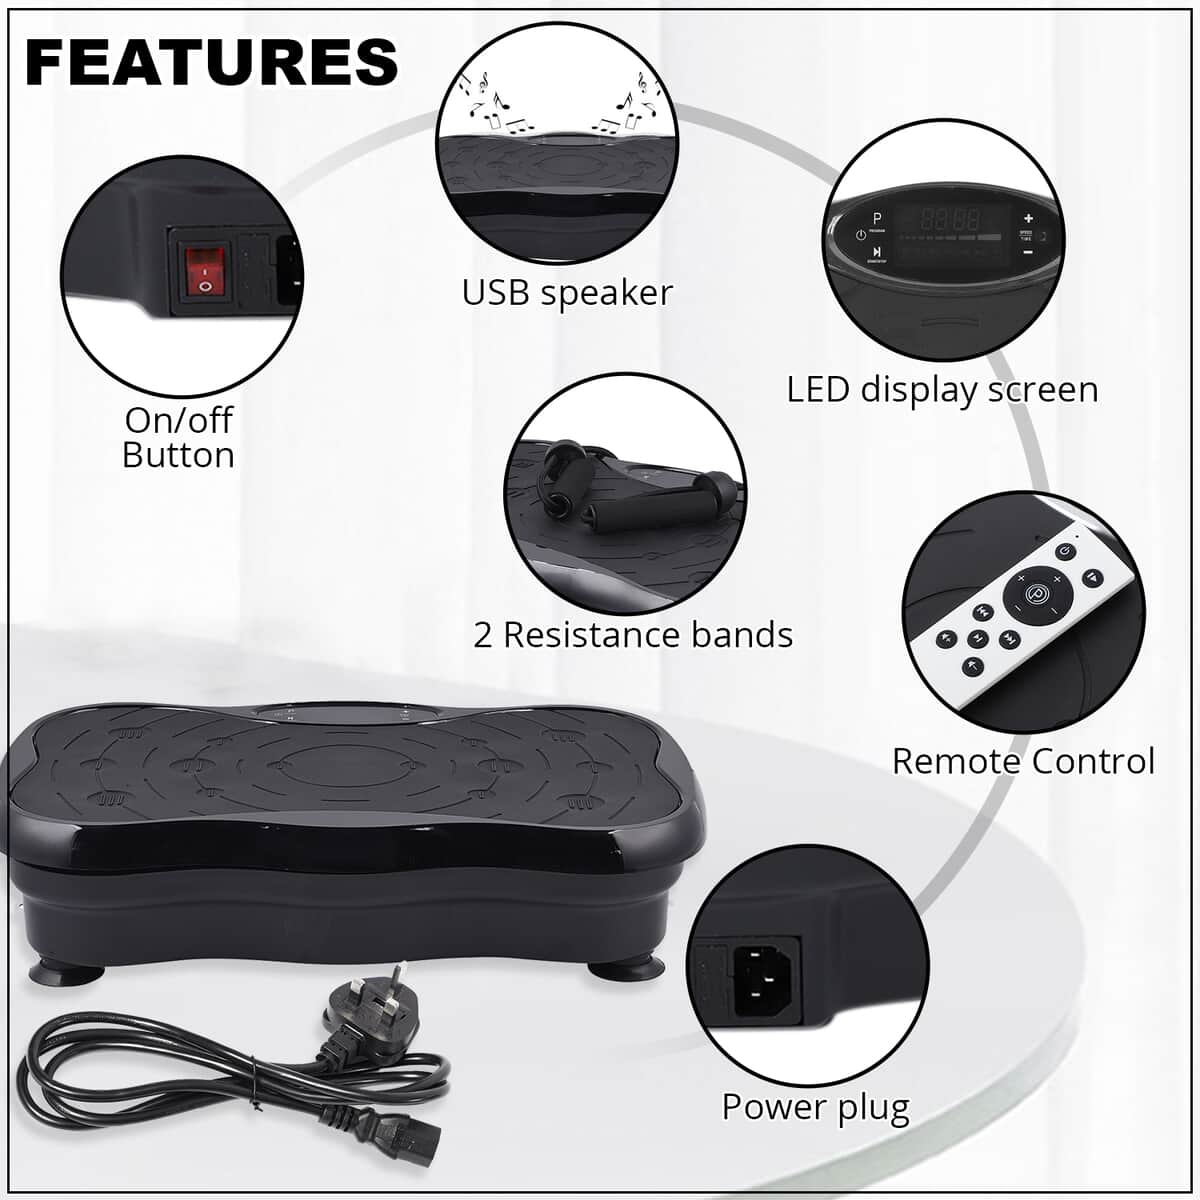 SoulSmart Whole Body Fitness Vibration Platform with Resistance Bands, Remote, & USB Speaker (200 W) Black image number 2